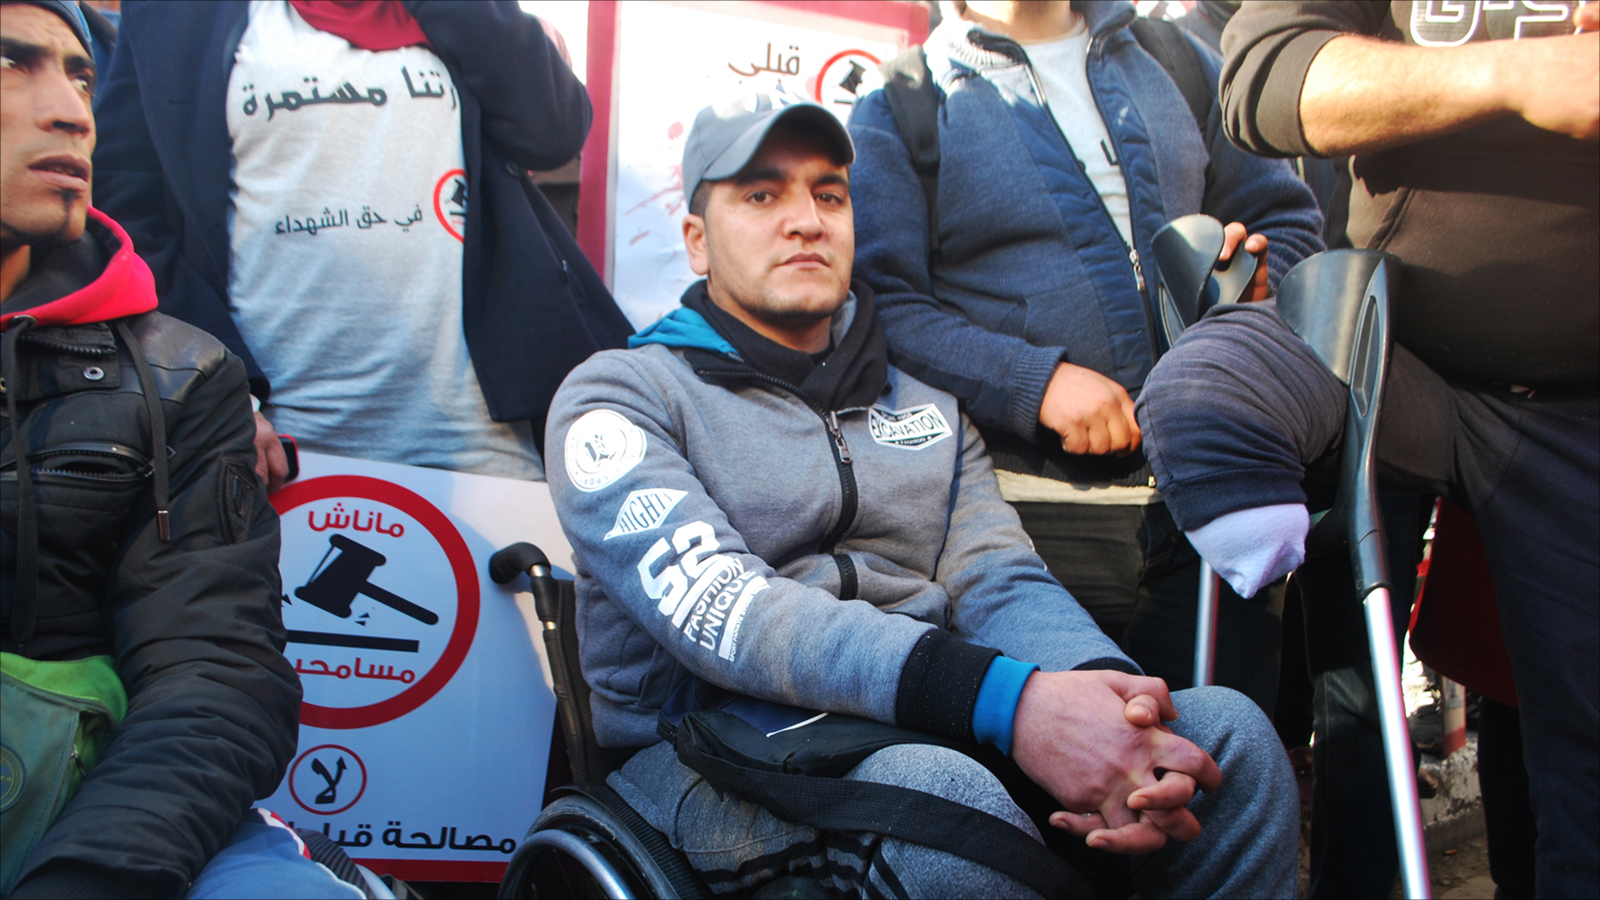 ‪جريح الثورة خالد بن نجمة يشارك في الاحتجاج رغم إعاقته‬ (الجزيرة)